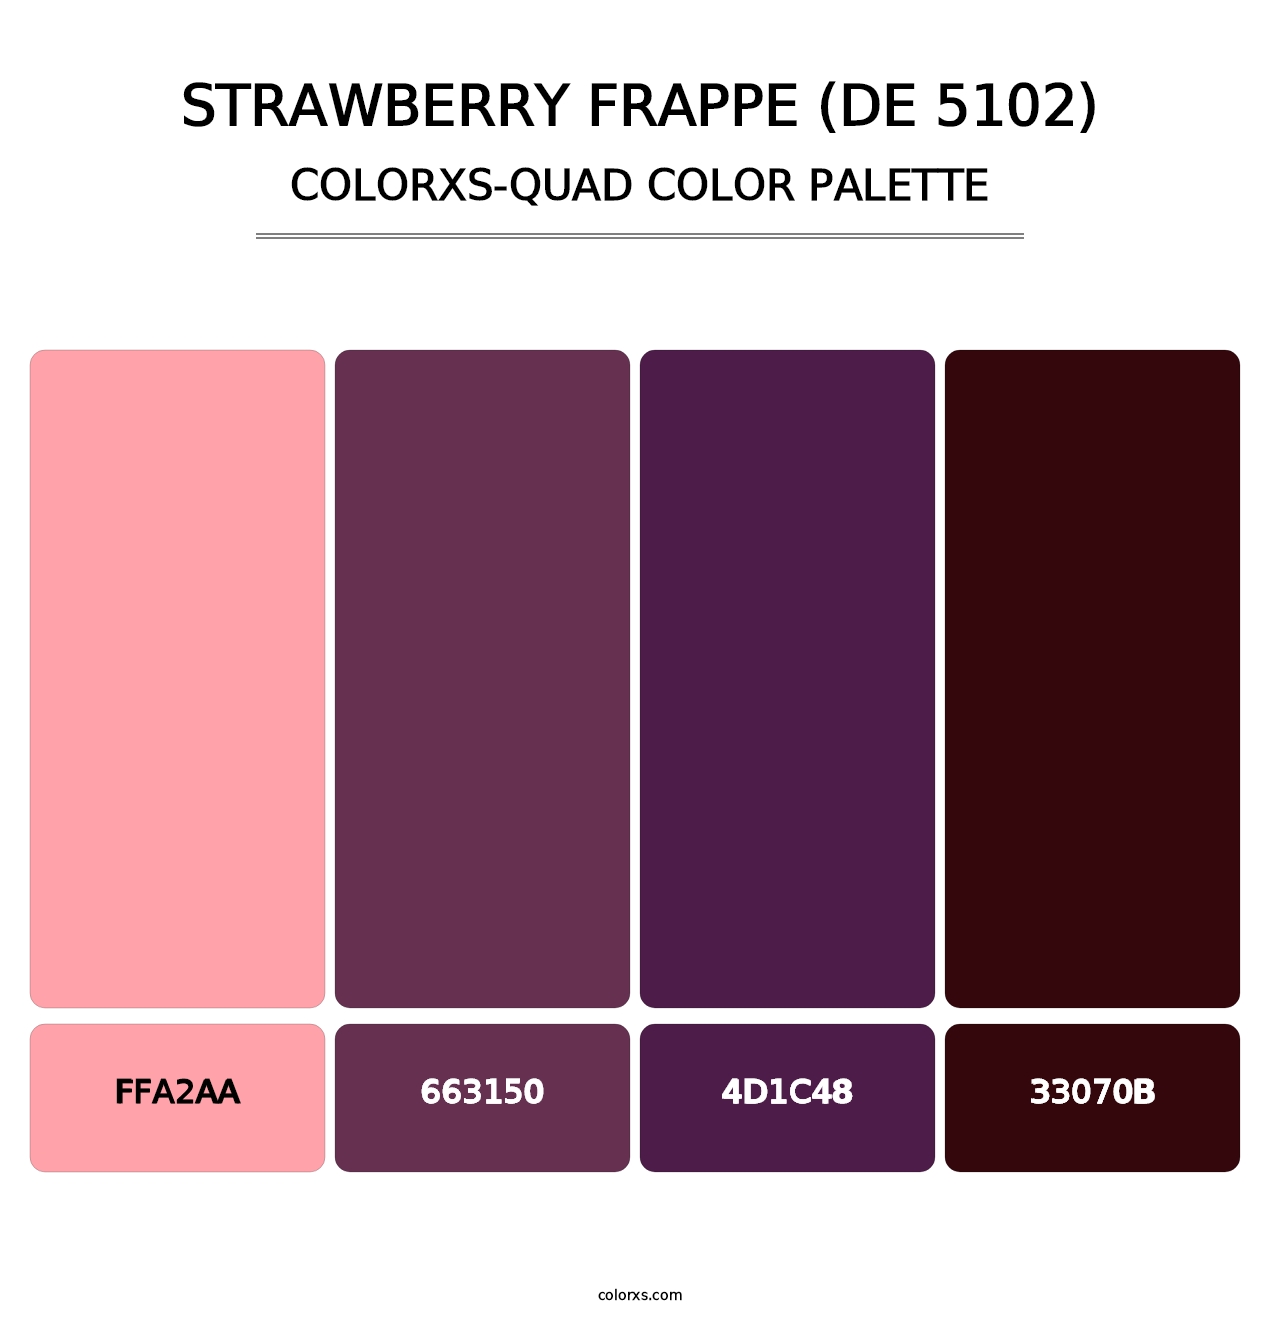 Strawberry Frappe (DE 5102) - Colorxs Quad Palette